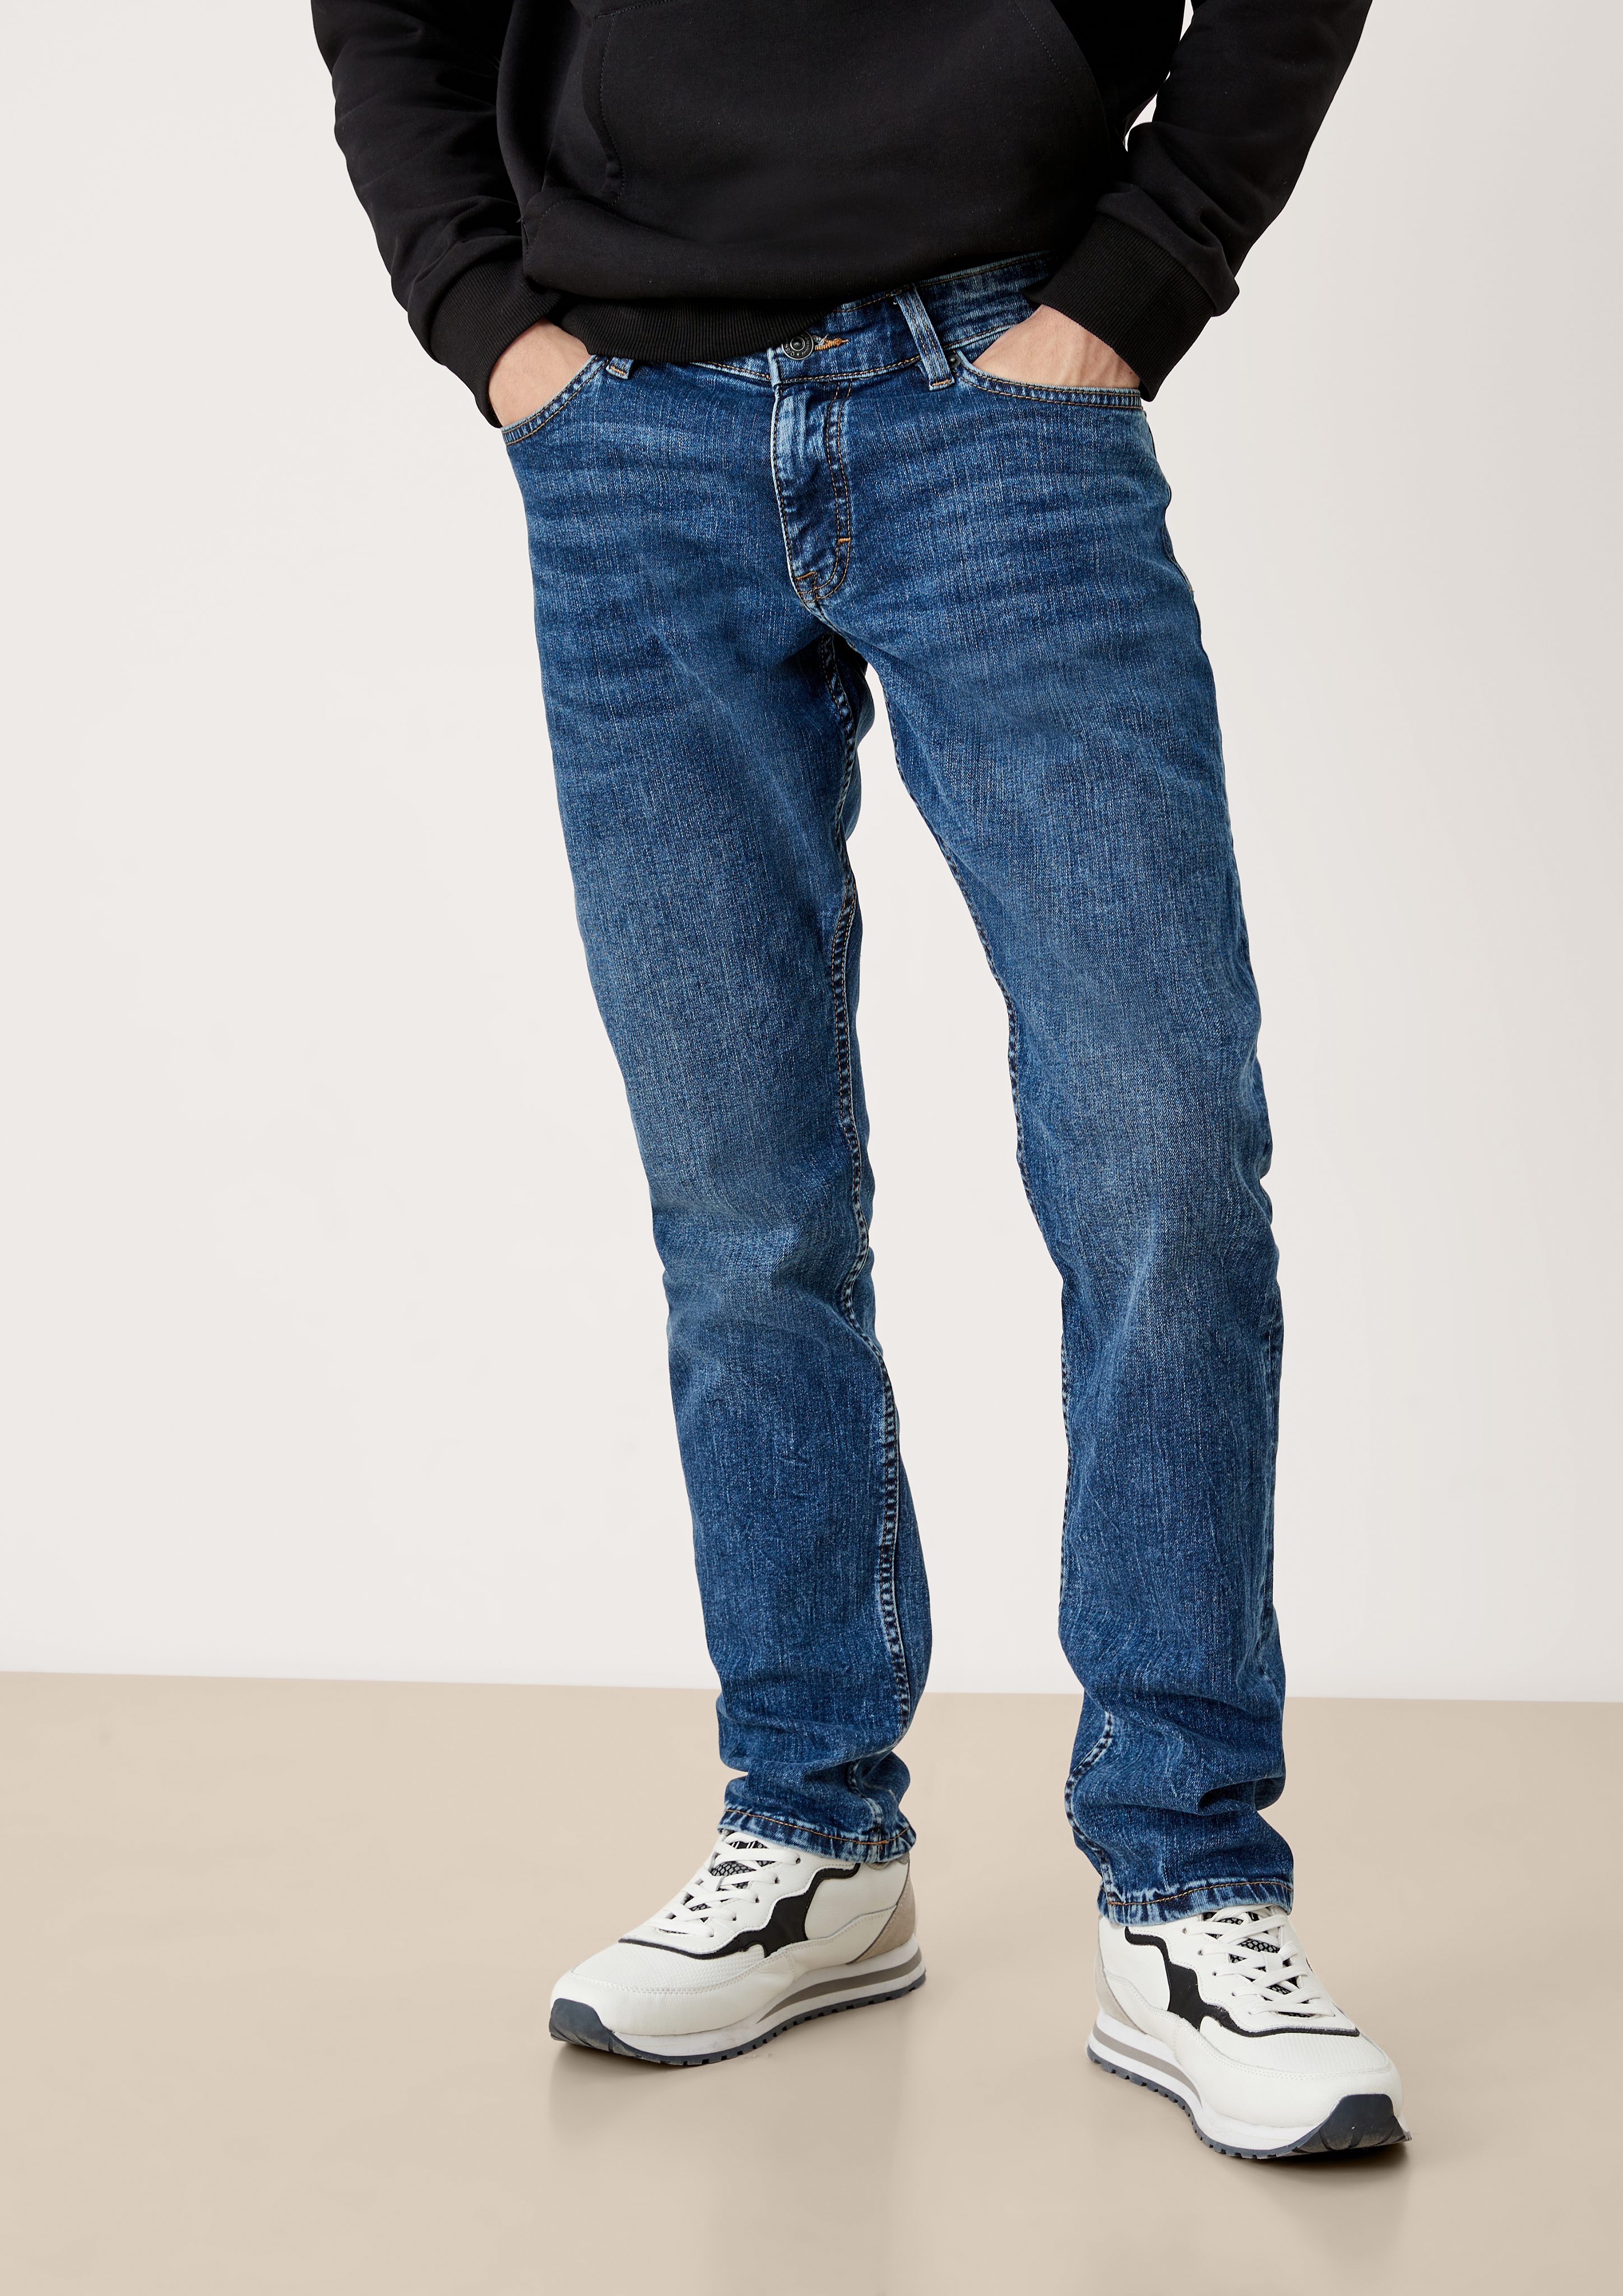 QS 5-Pocket-Jeans Jeans Rick / Slim Fit / Mid Rise / Slim Leg Waschung, hat  einen Reißverschluss, mit Knopf als Verschluss, in 5-Pocket-Form